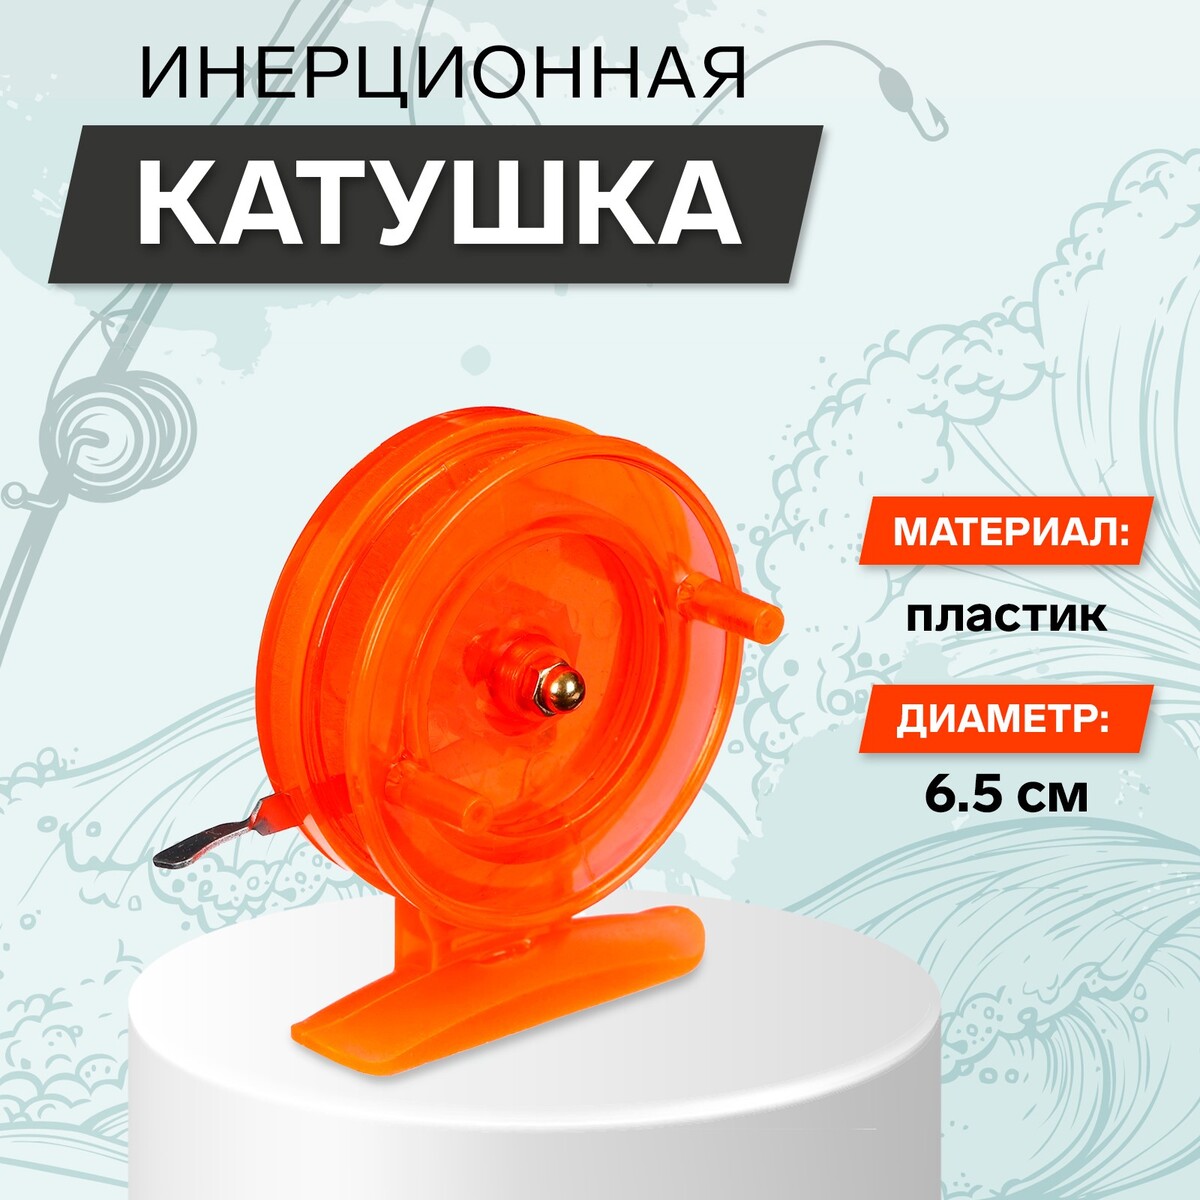 Катушка инерционная, пластик, диаметр 6.5 см, цвет оранжевый, 808s